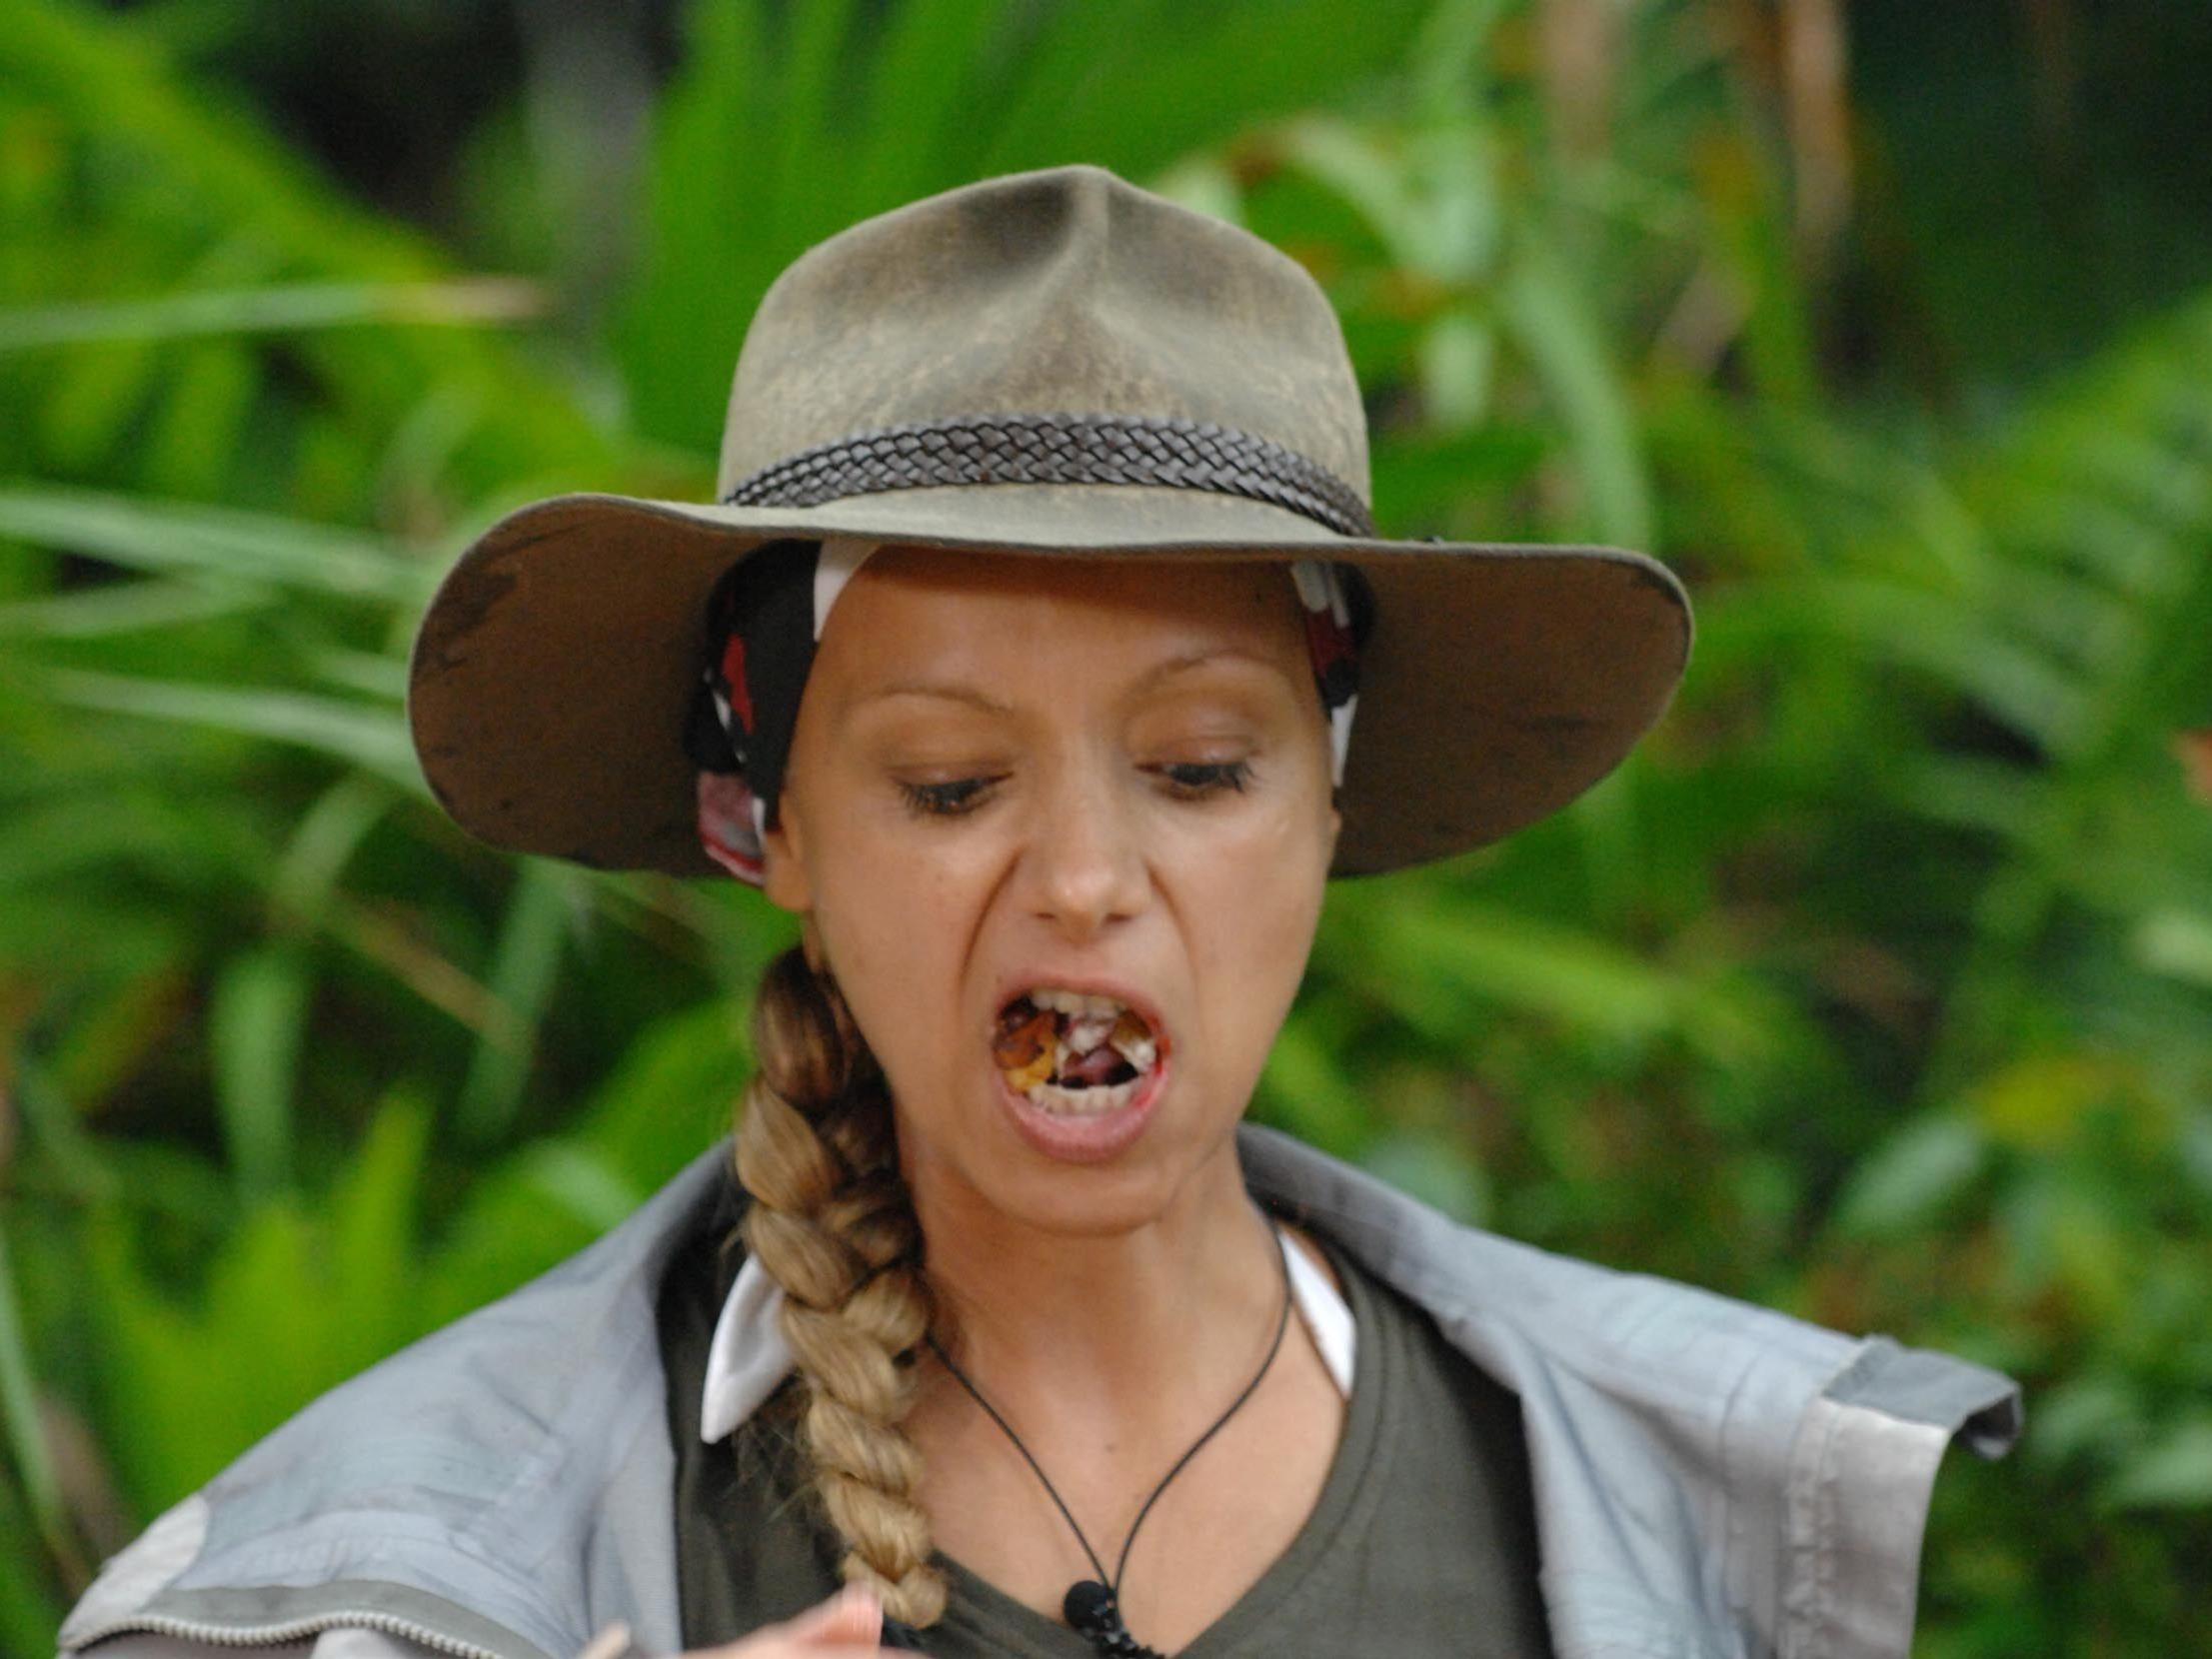 Wäh, das schmeckt ekelhaft! Radost Bokel bei ihrer ersten Dschungelprüfung.